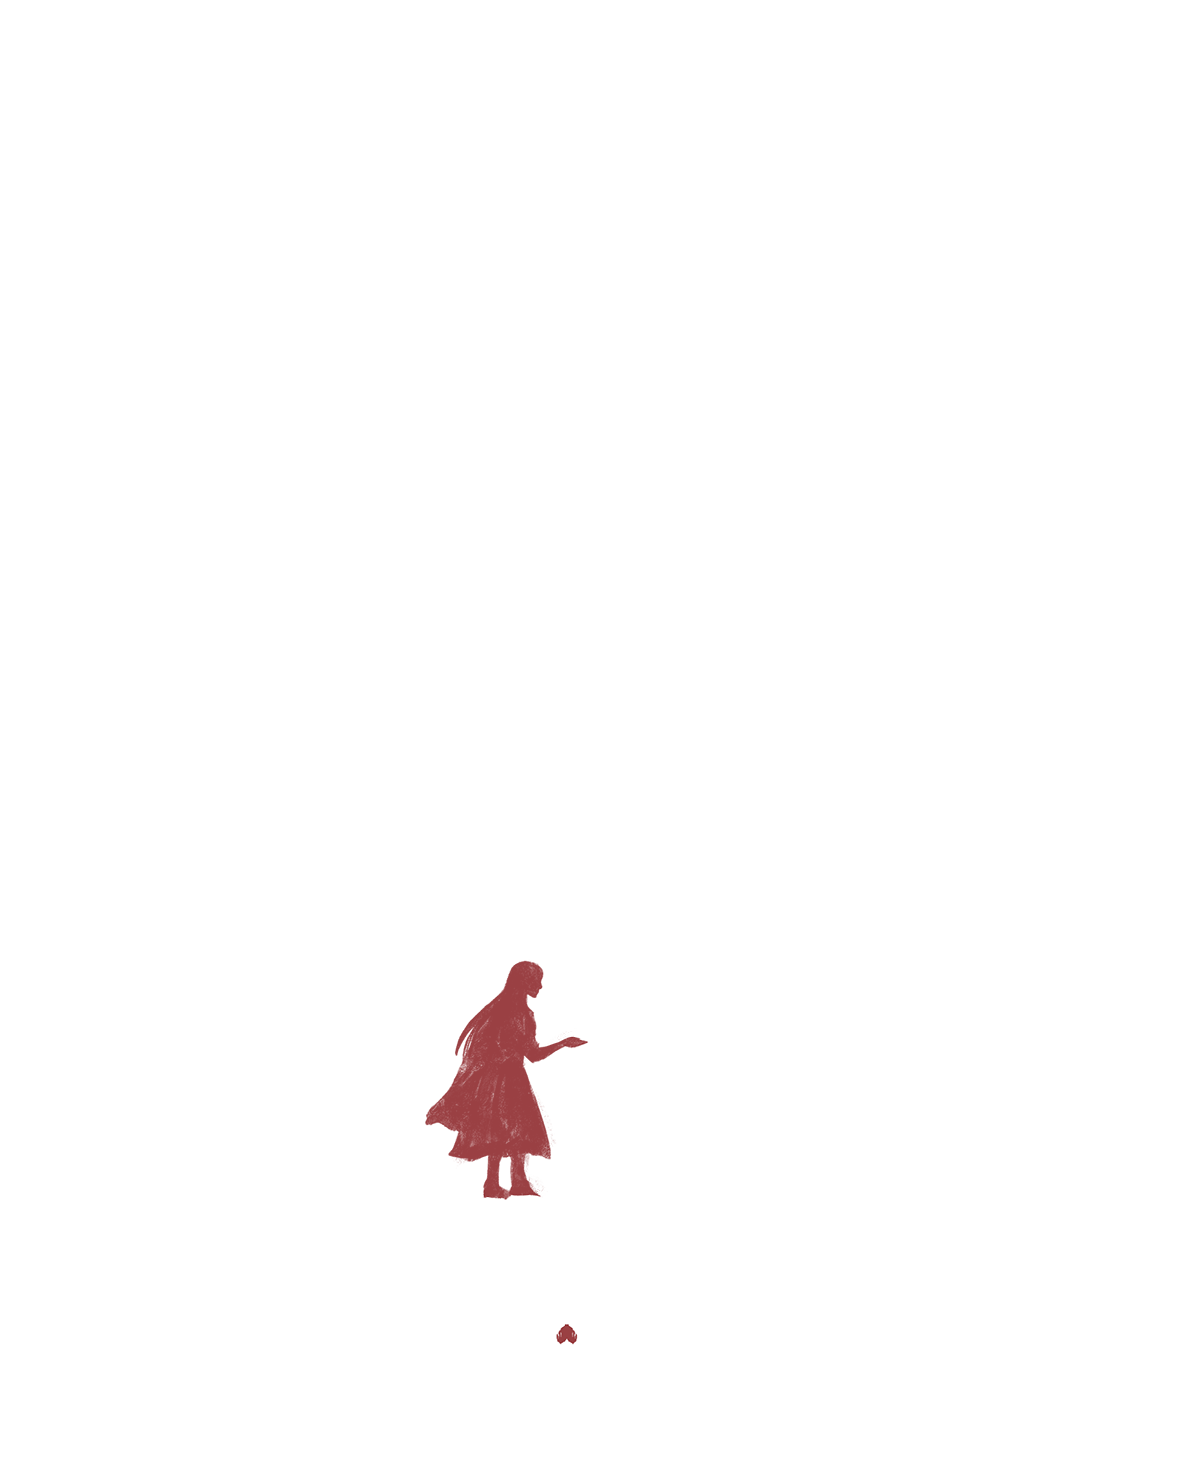 Snow White Ashes (demo)